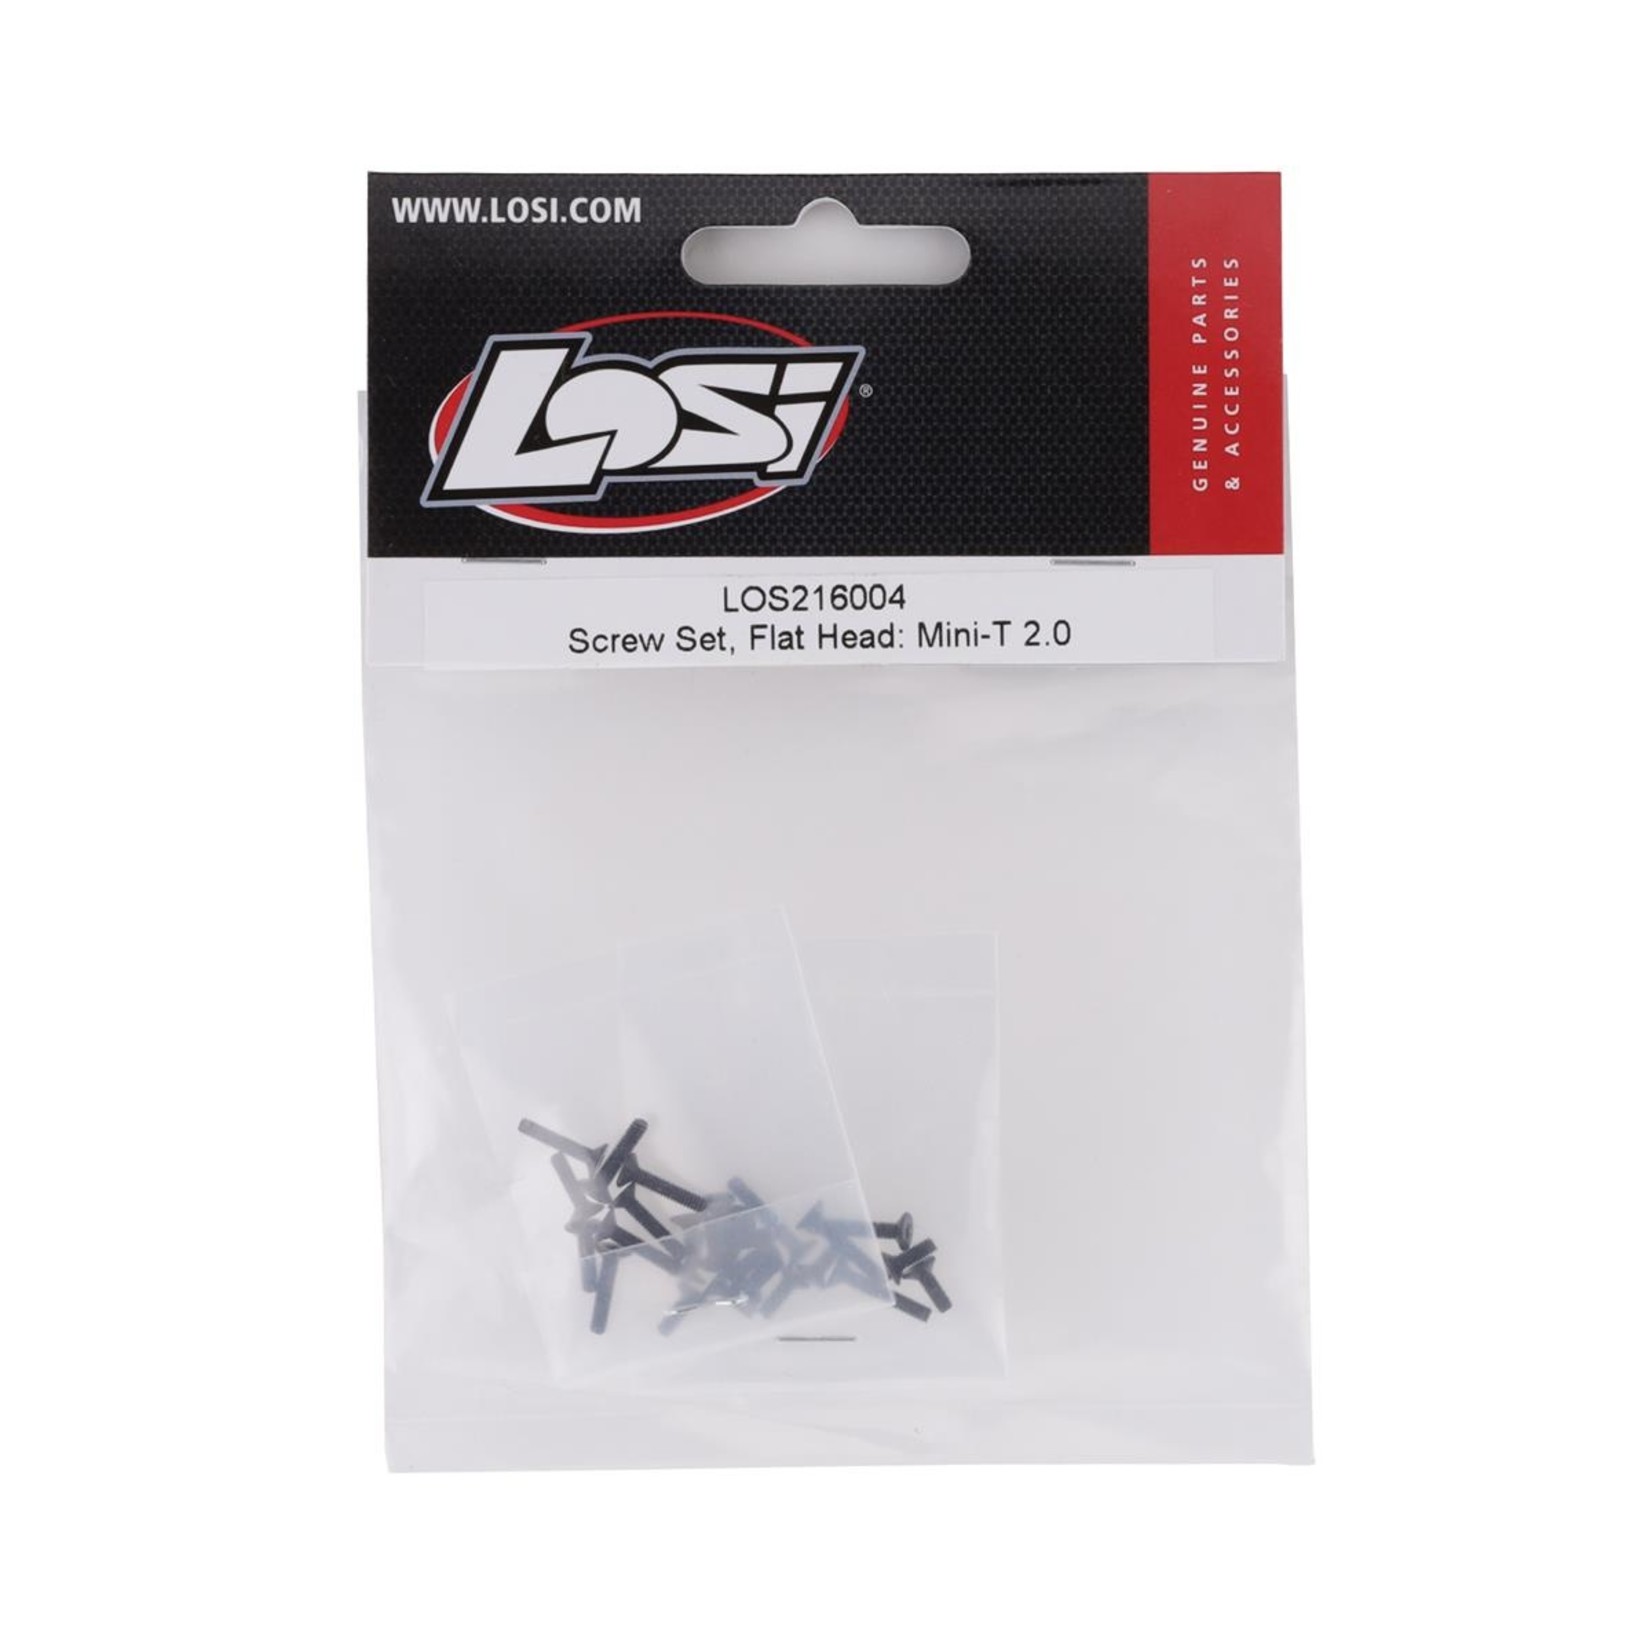 Losi Losi Mini-T 2.0 Flat Head Screw Set #LOS216004